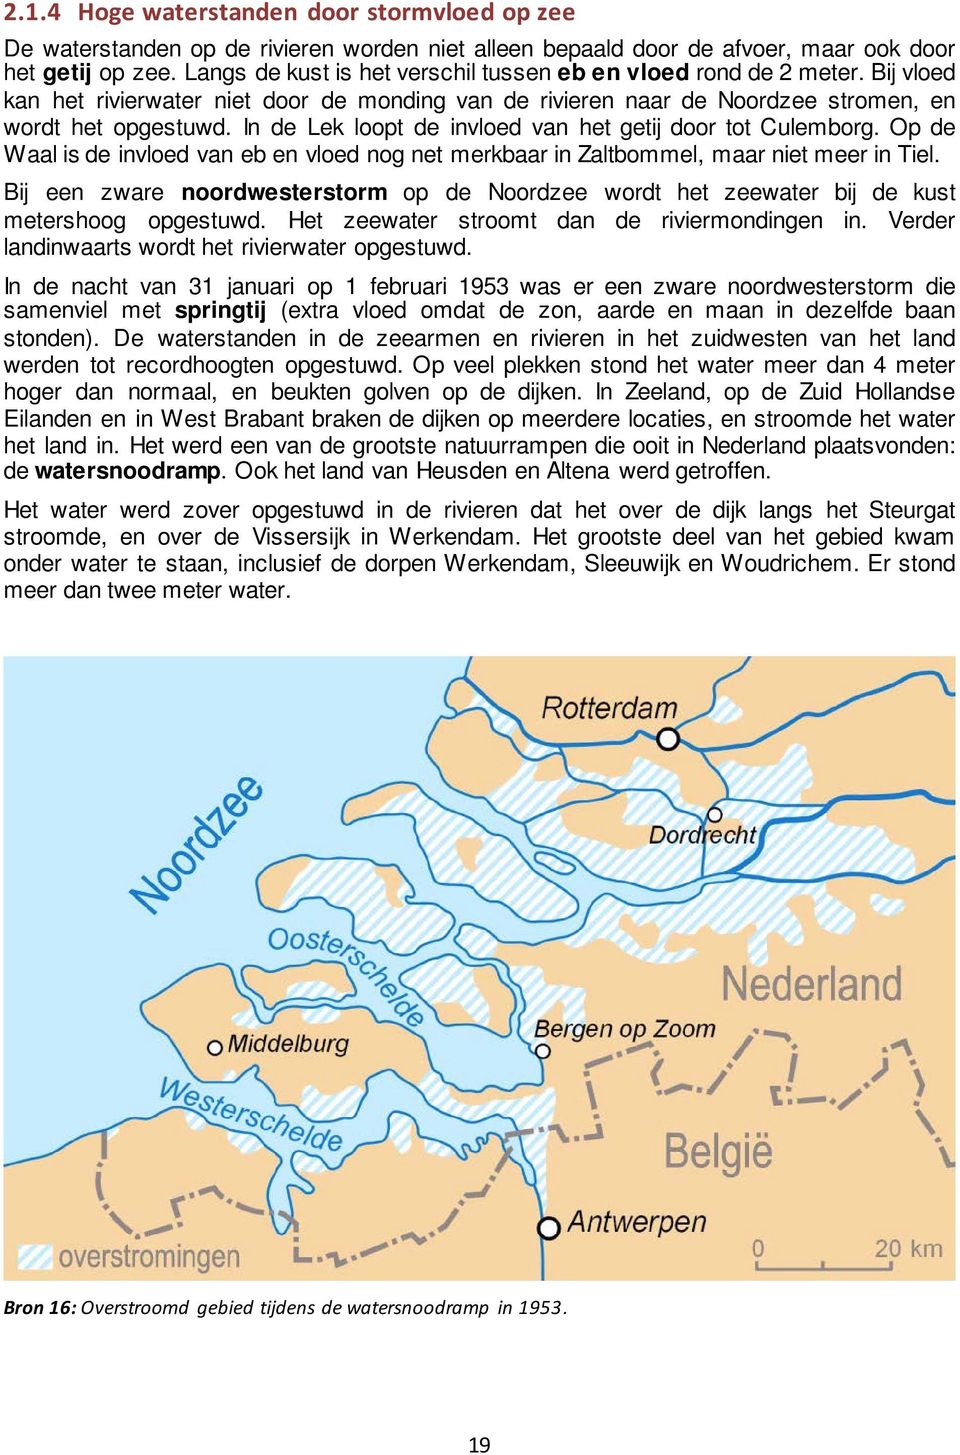 In de Lek loopt de invloed van het getij door tot Culemborg. Op de Waal is de invloed van eb en vloed nog net merkbaar in Zaltbommel, maar niet meer in Tiel.